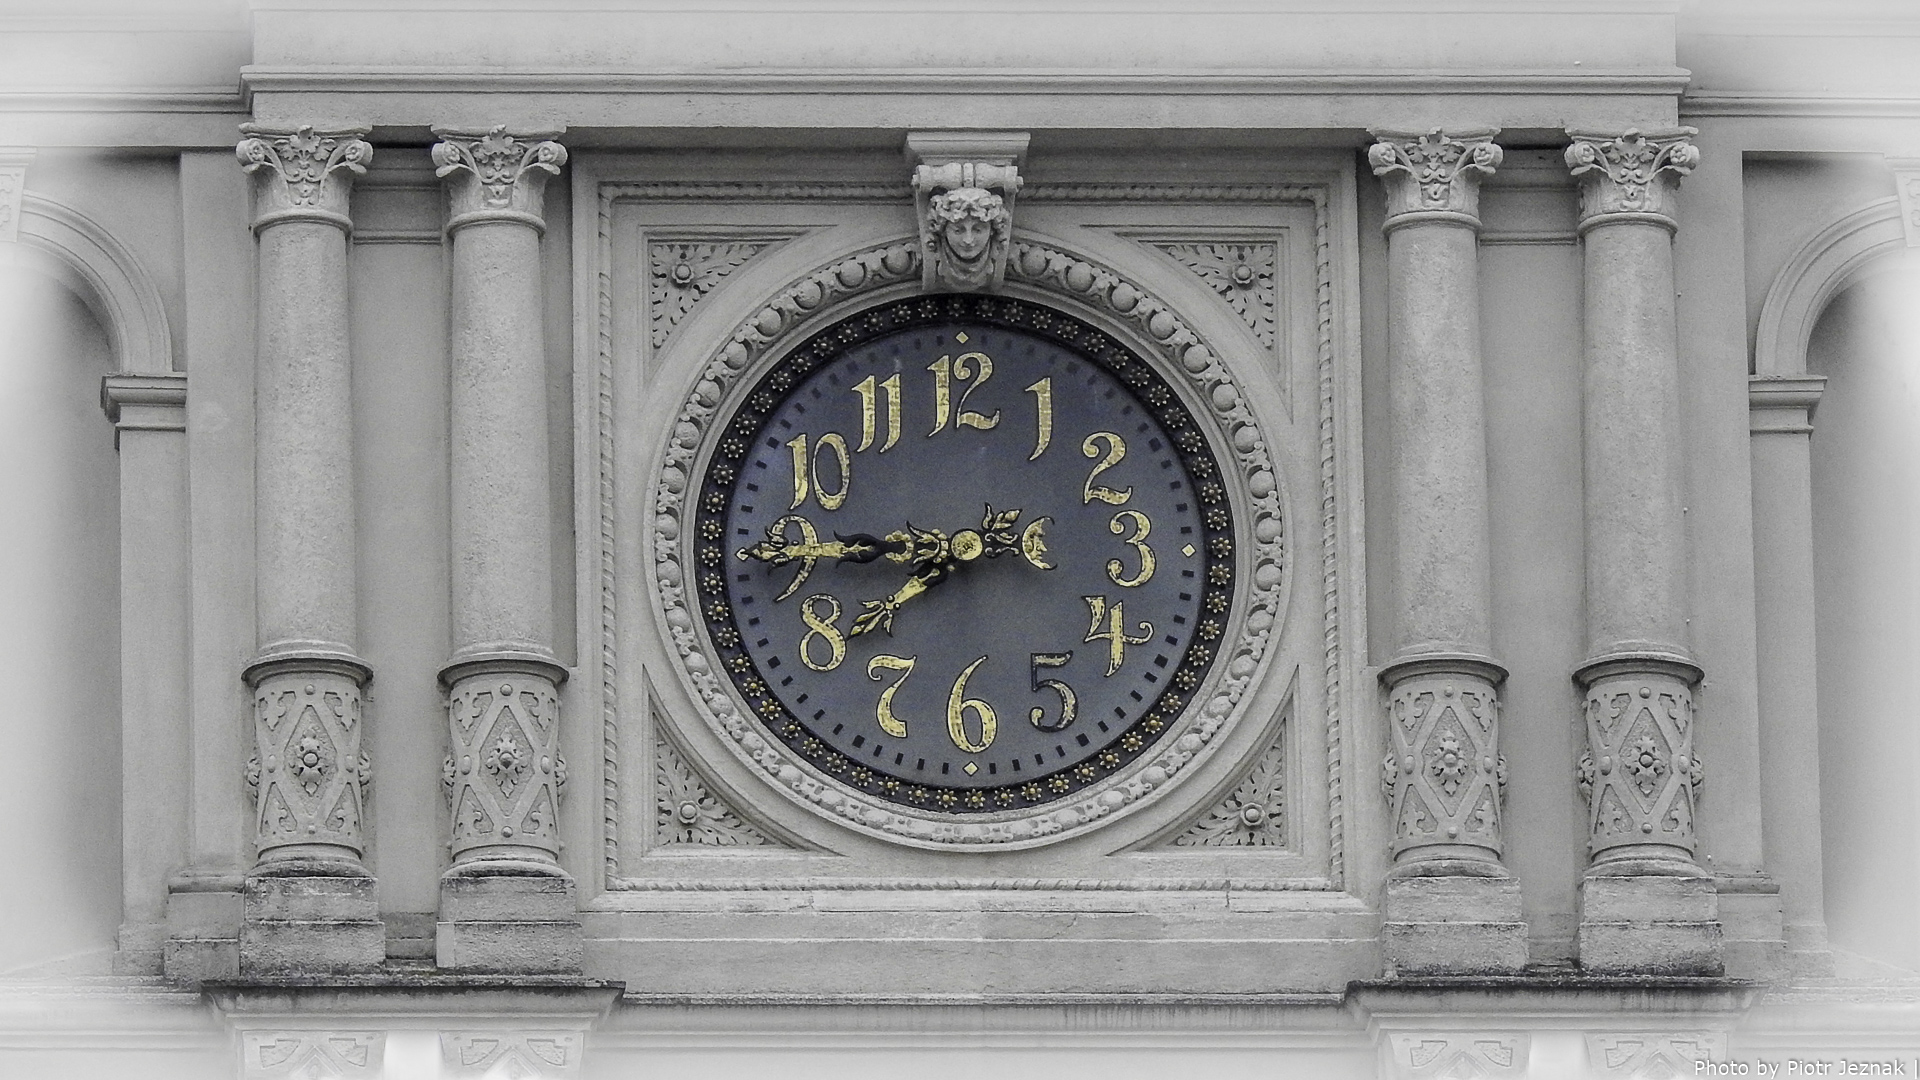 The facade clock on the Graz City Hall.